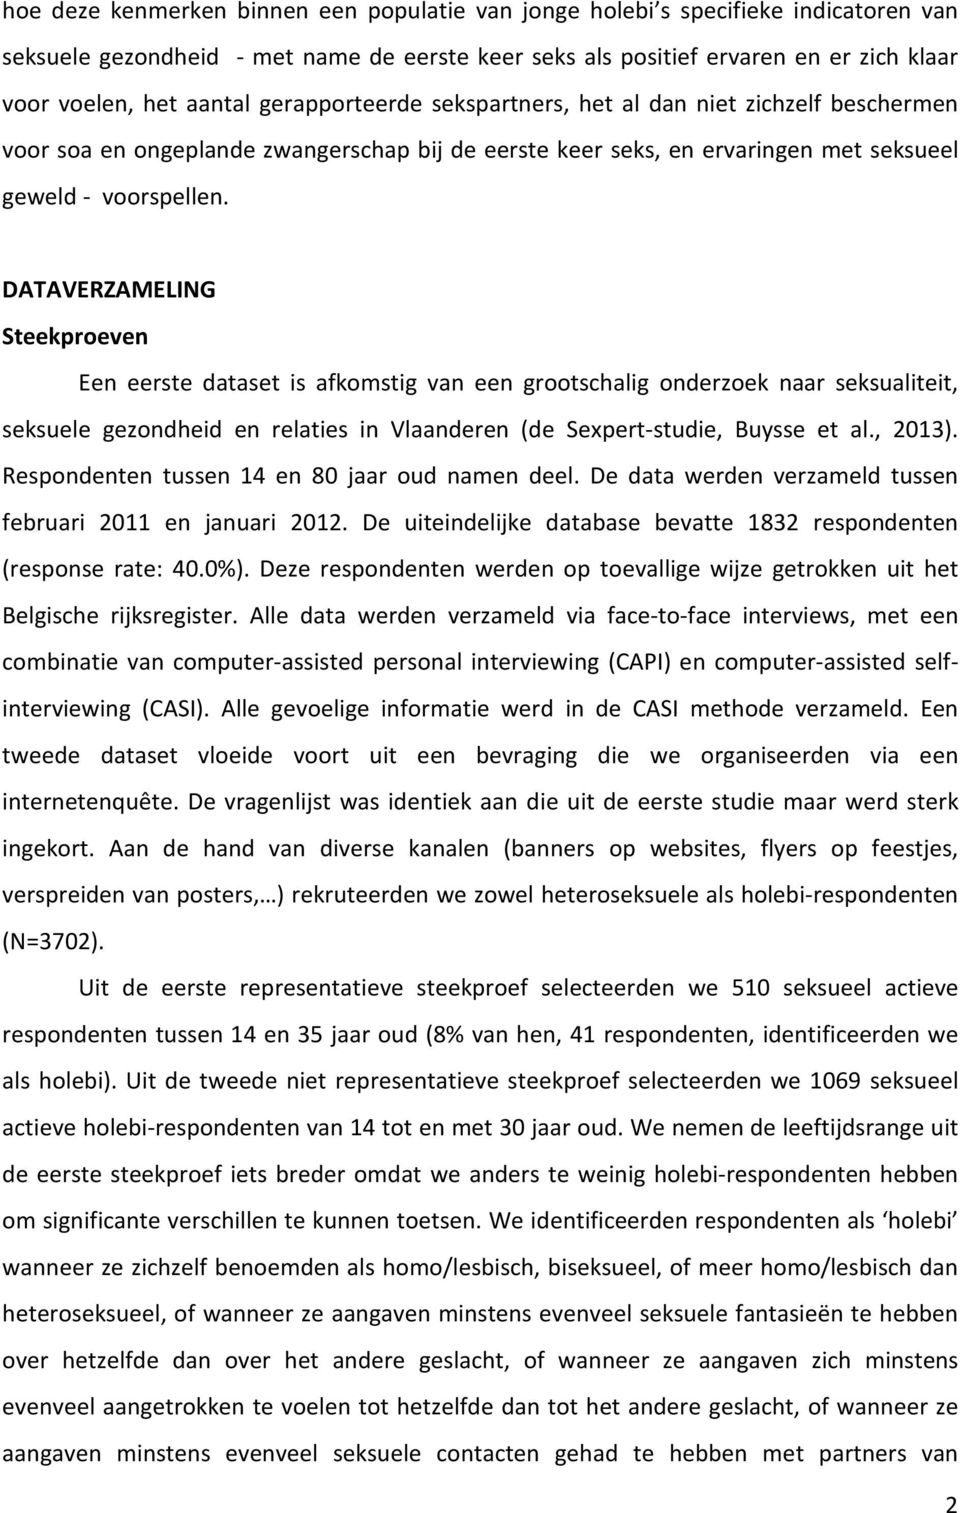 DATAVERZAMELING Steekproeven Een eerste dataset is afkomstig van een grootschalig onderzoek naar seksualiteit, seksuele gezondheid en relaties in Vlaanderen (de Sexpert-studie, Buysse et al., 2013).